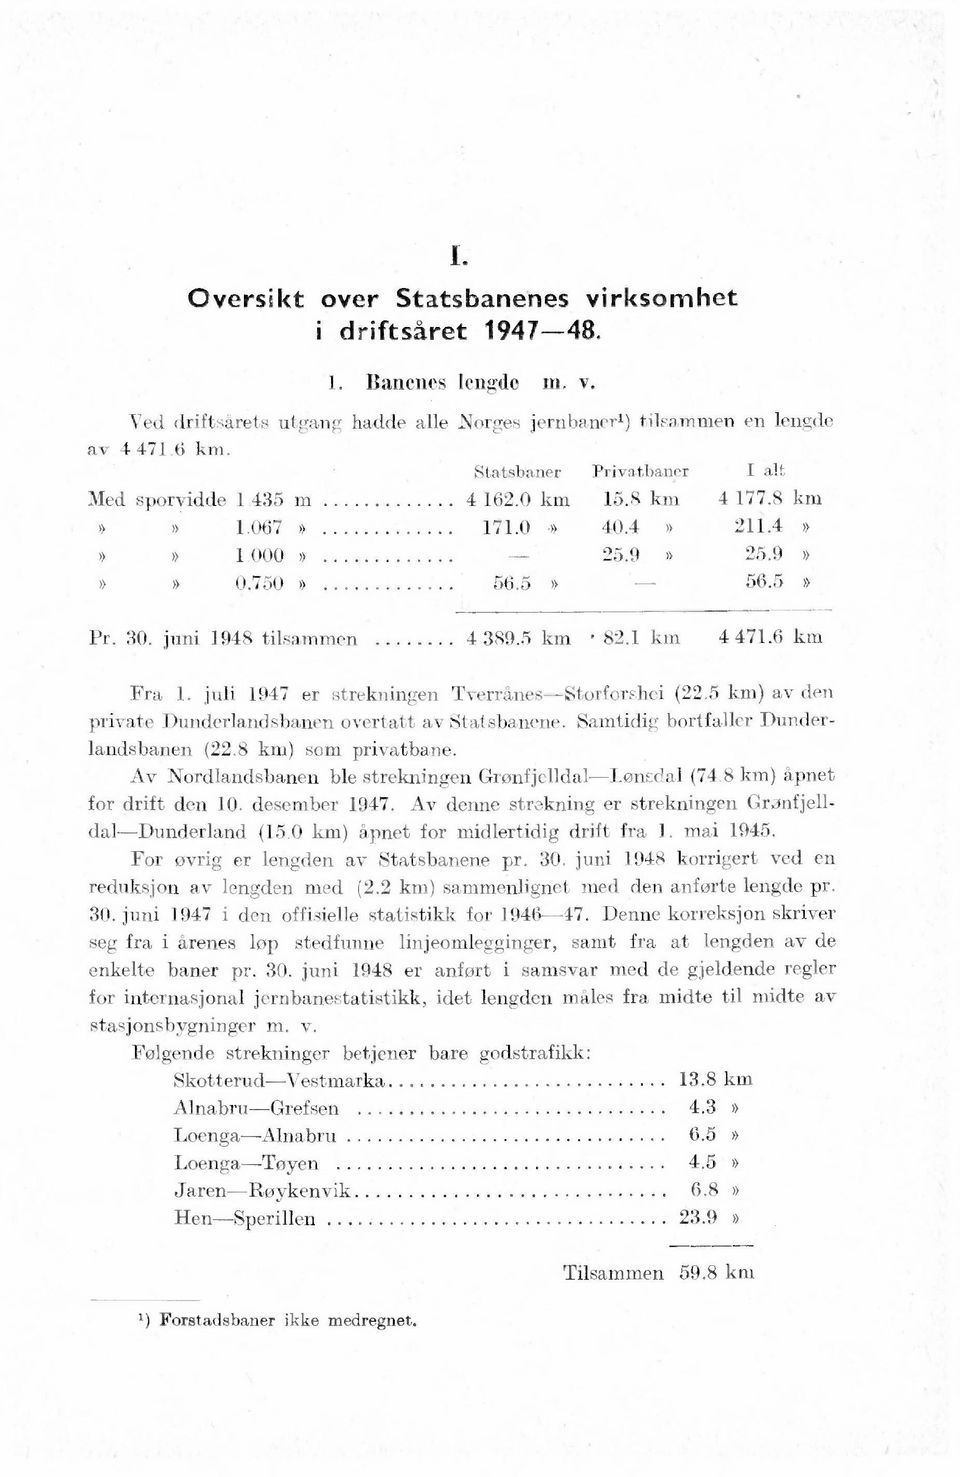 6 km Fra 1. juli 1947 er strekningen Tverrånes-Storforshei (22.5 km) av den private Dunderlandsbanen overtatt av Statsbanene. Samtidig bortfaller Dunderlandsbanen (22.8 km) som privatbane.